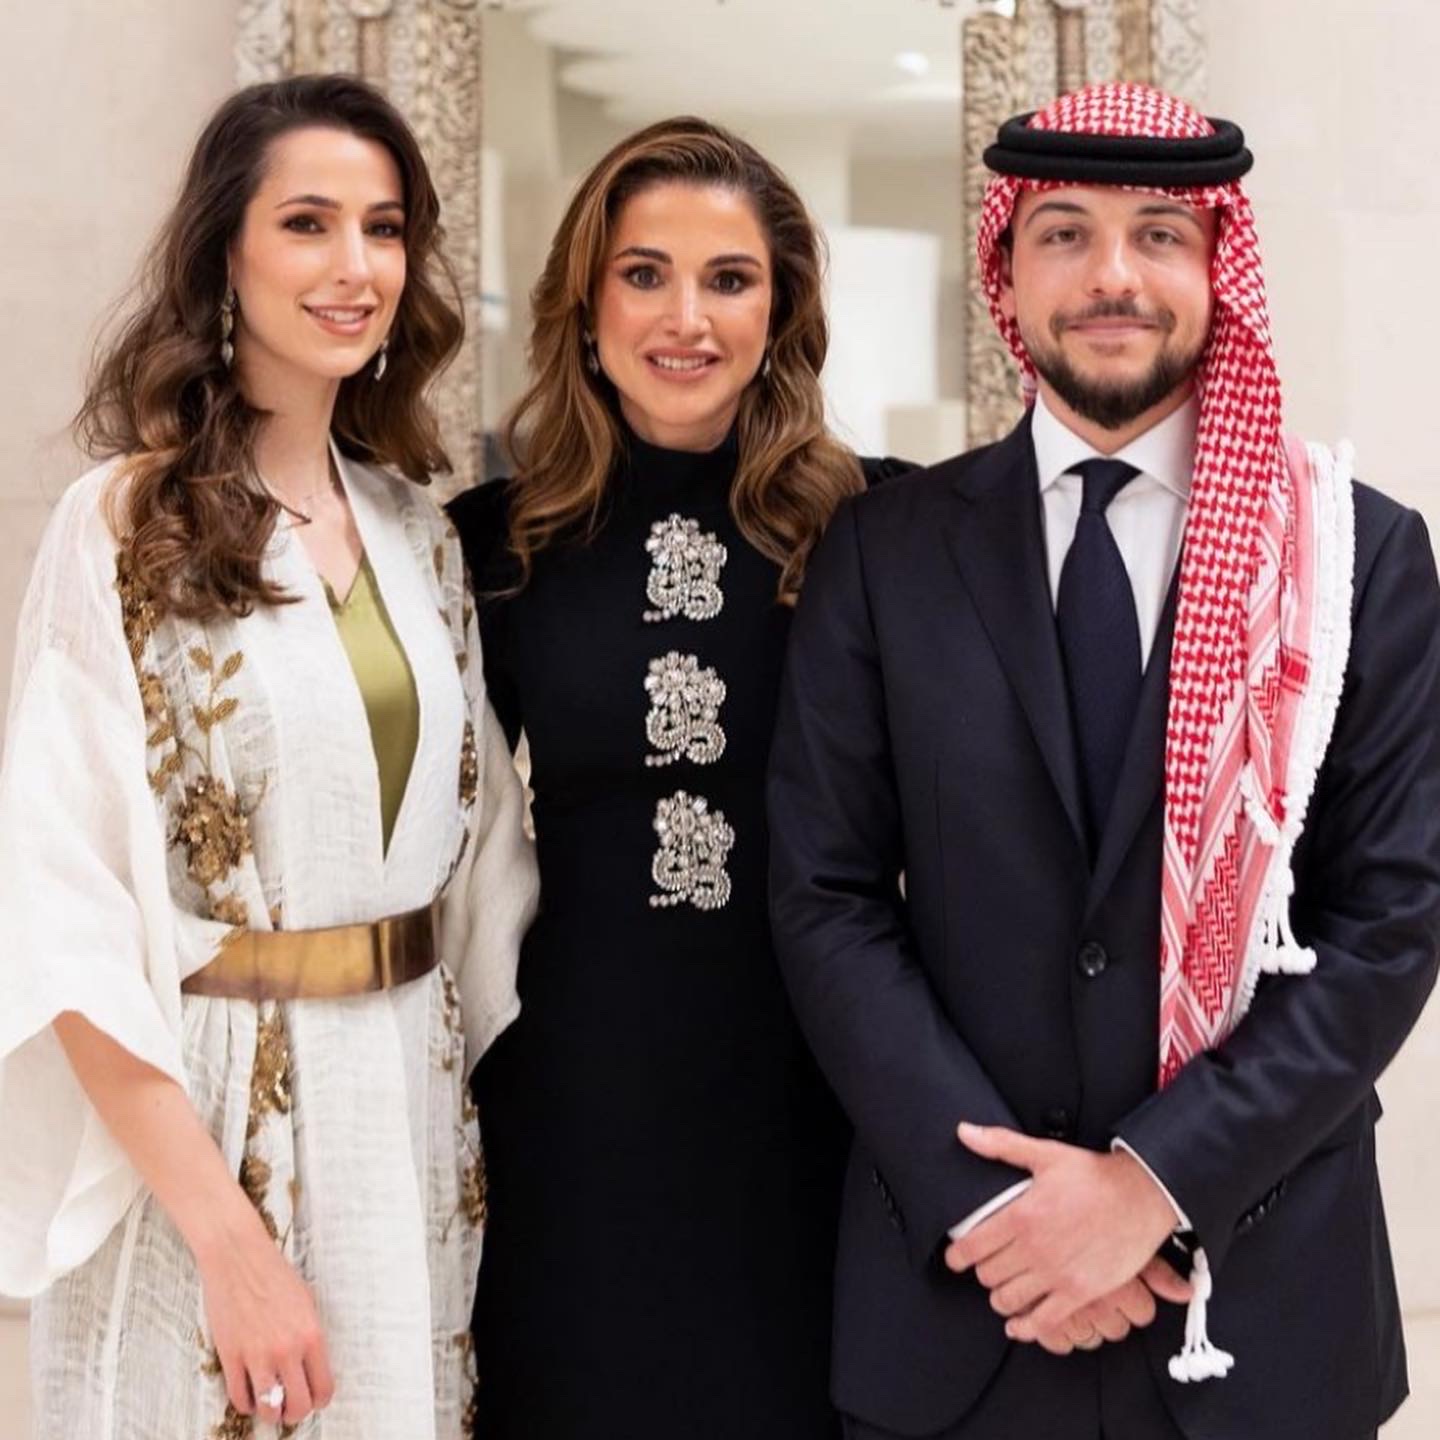 Il fidanzamento del principe ereditario di Giordania Hussein bin Abdullah II con la giovane donna Rajwa Al-Saif